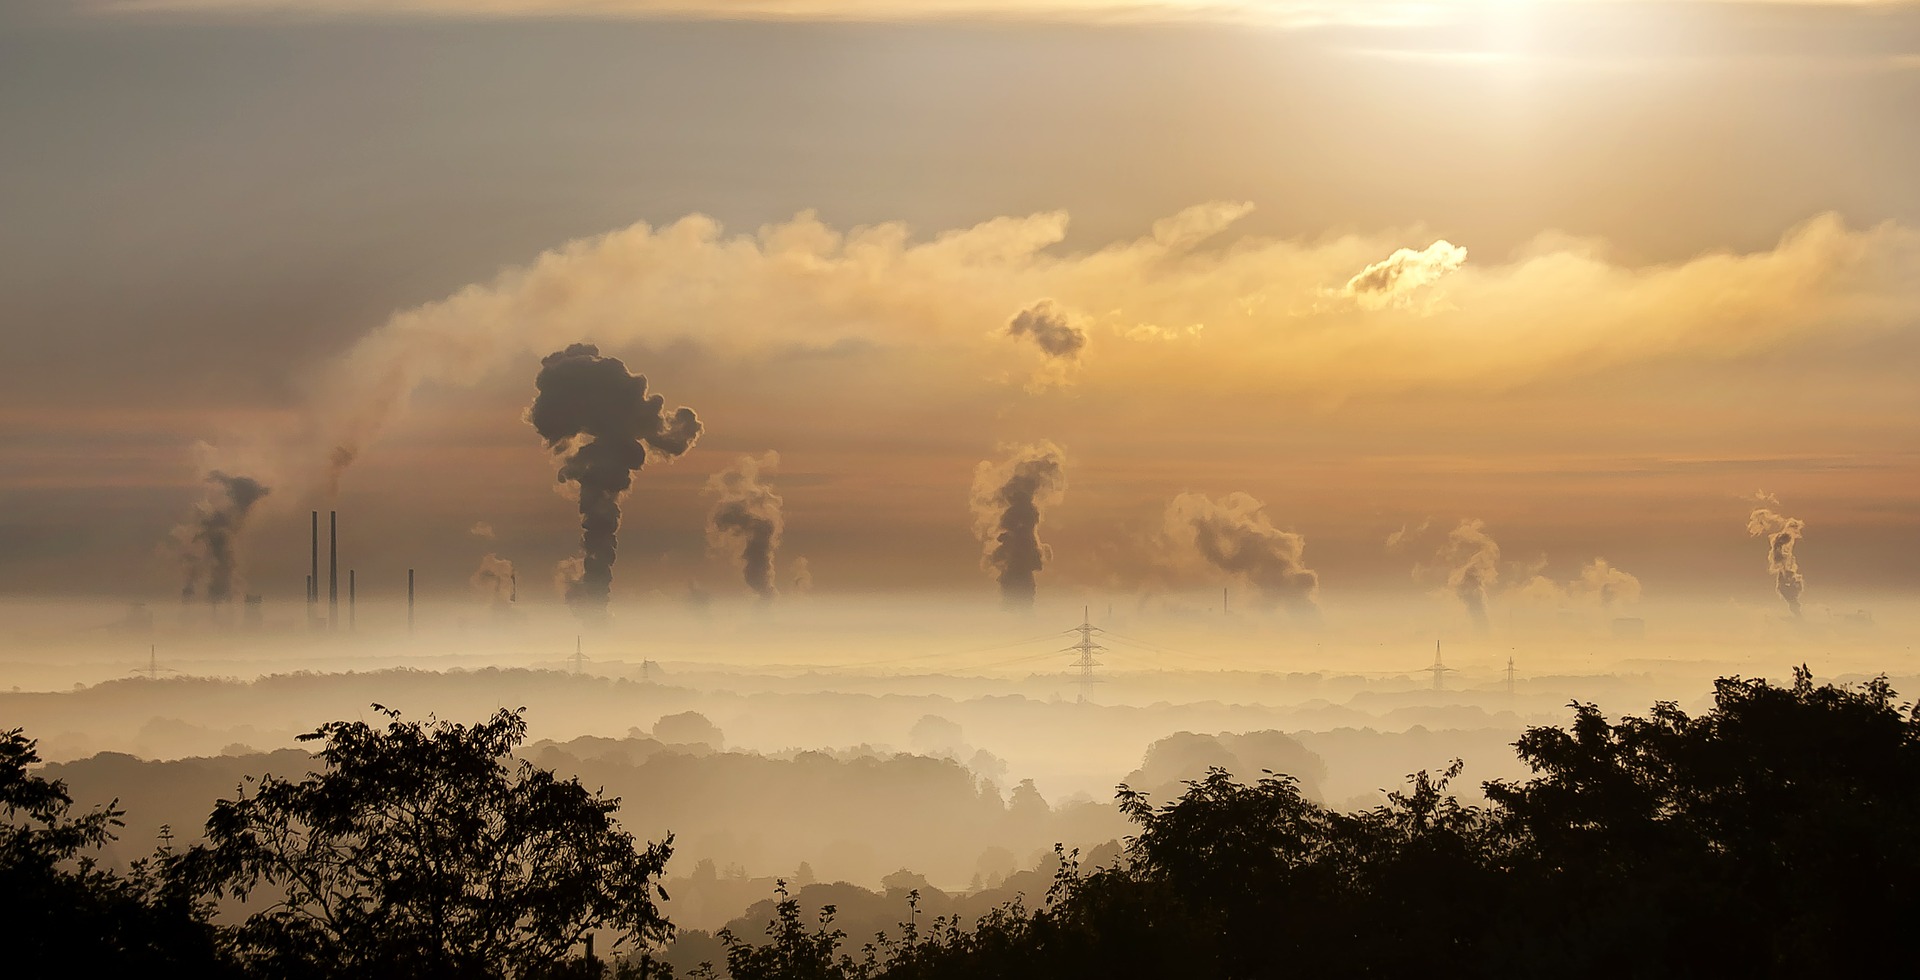 Szemétszedők és karbonkreditek csatája - Az illegális ipar, ami 24 millió embernek ad munkát (véleménycikk)